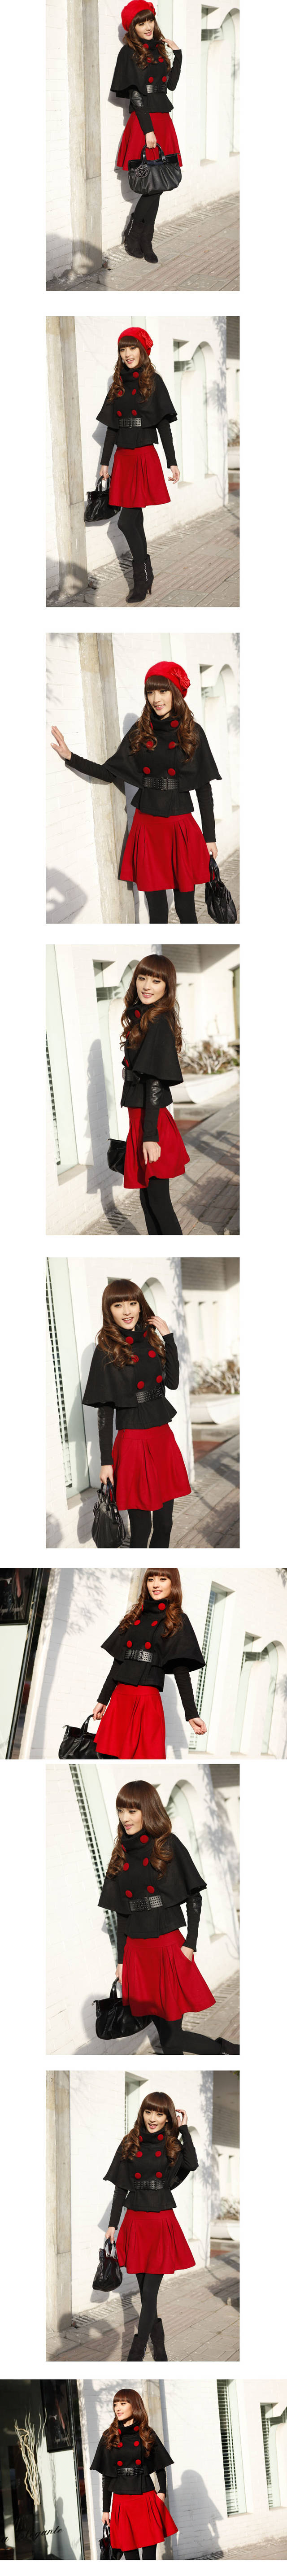 秋季新款韩版斗篷型修身毛呢外套女短款呢子大衣两件套装-3.jpg